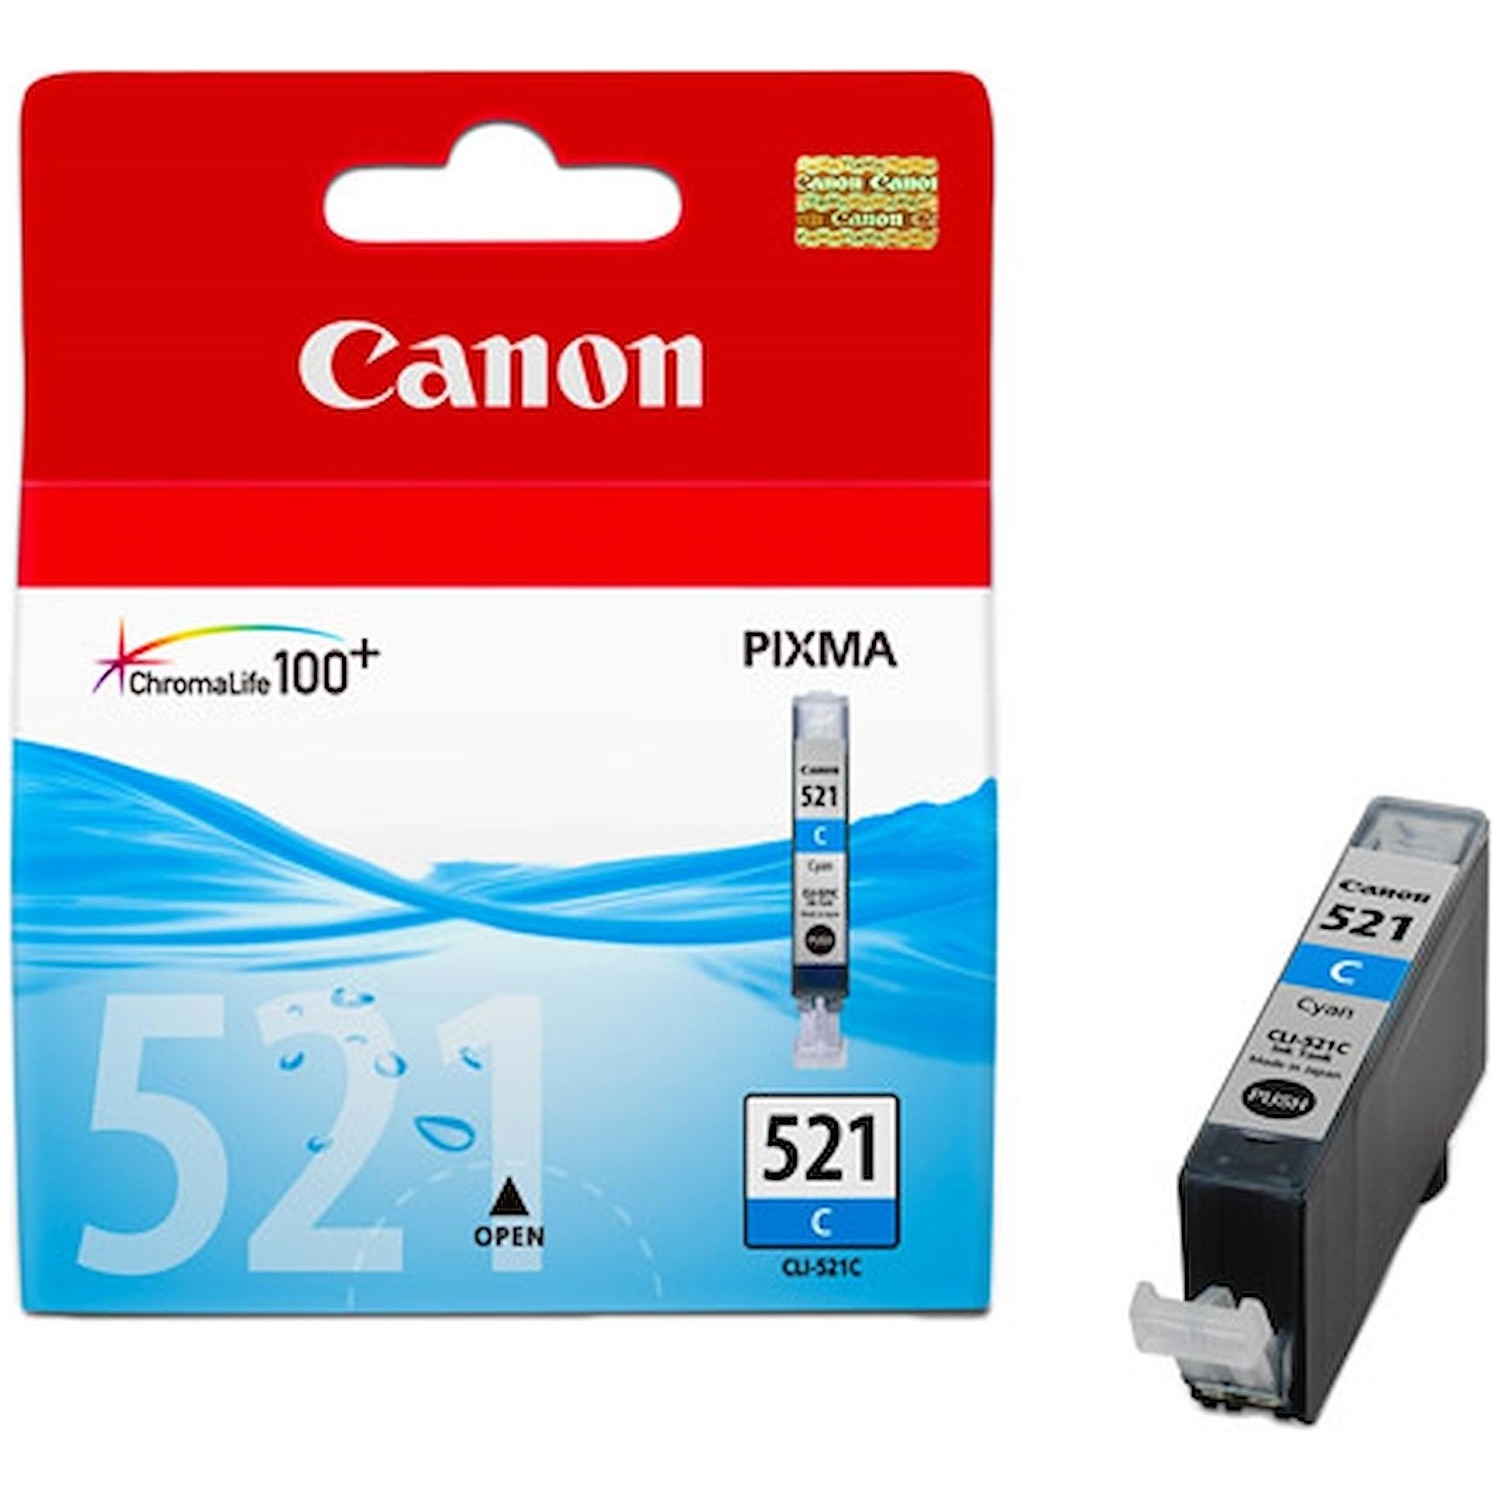 Immagine per Cartuccia Canon CLI-521C ciano                    per PIXMA IP4600 PIXMA IP3600 PIXMA MP980 da DIMOStore